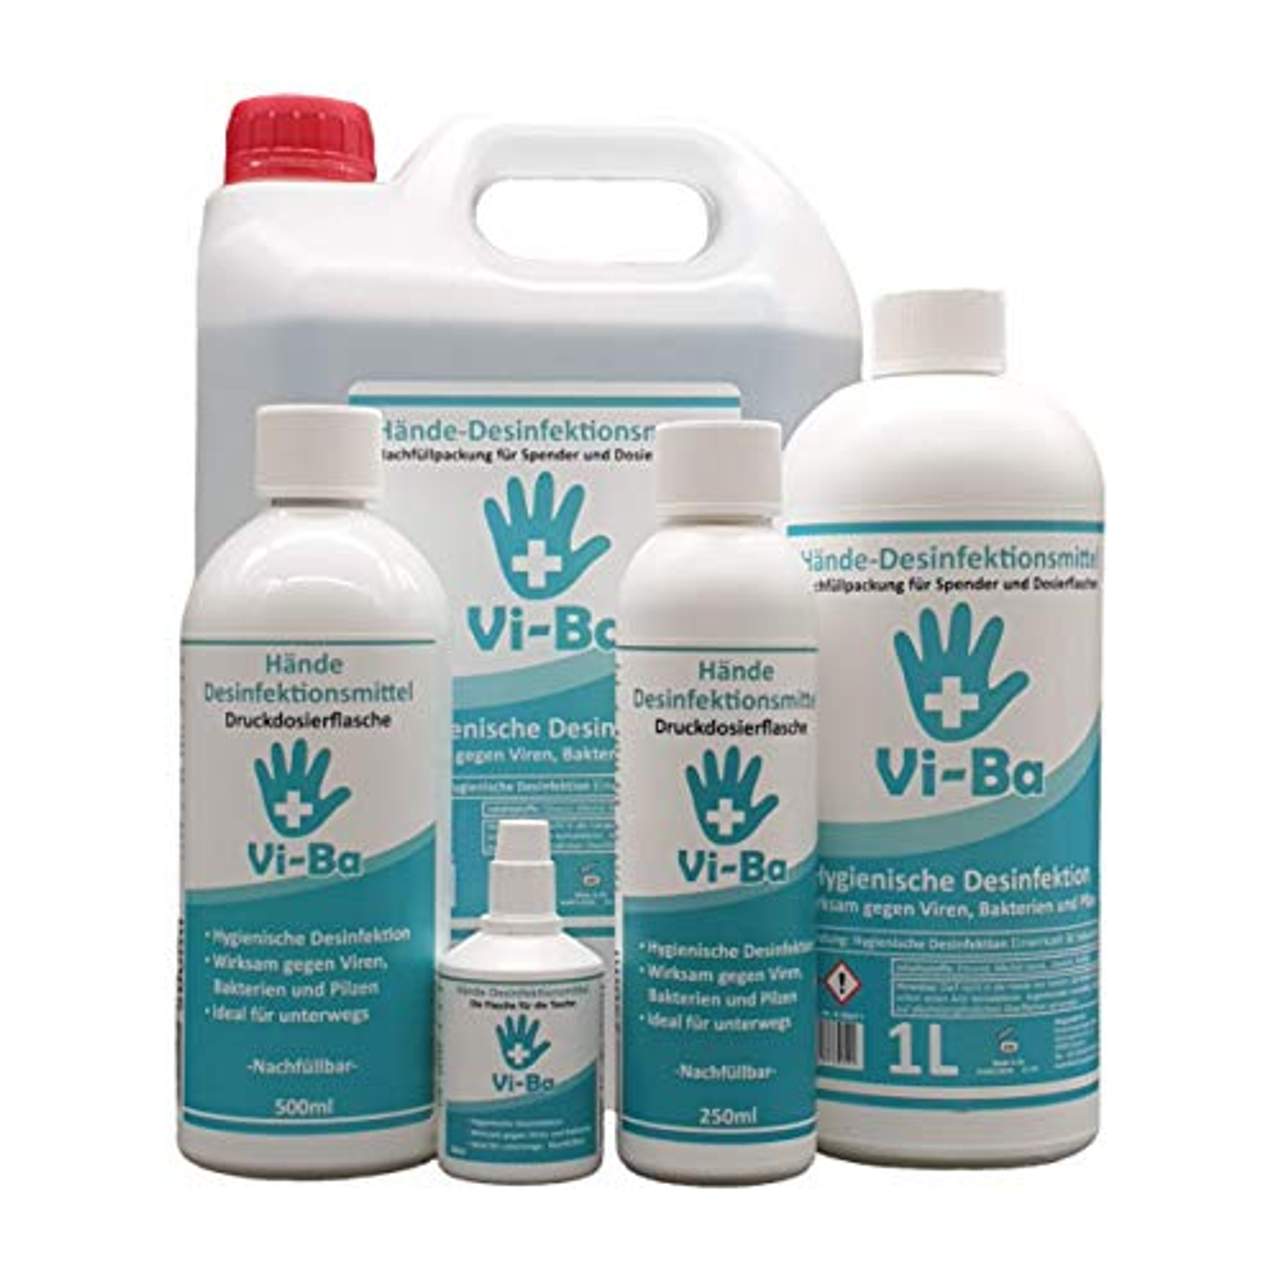 Feuerzangentasse Vi-Ba Hände Desinfektionsmittel